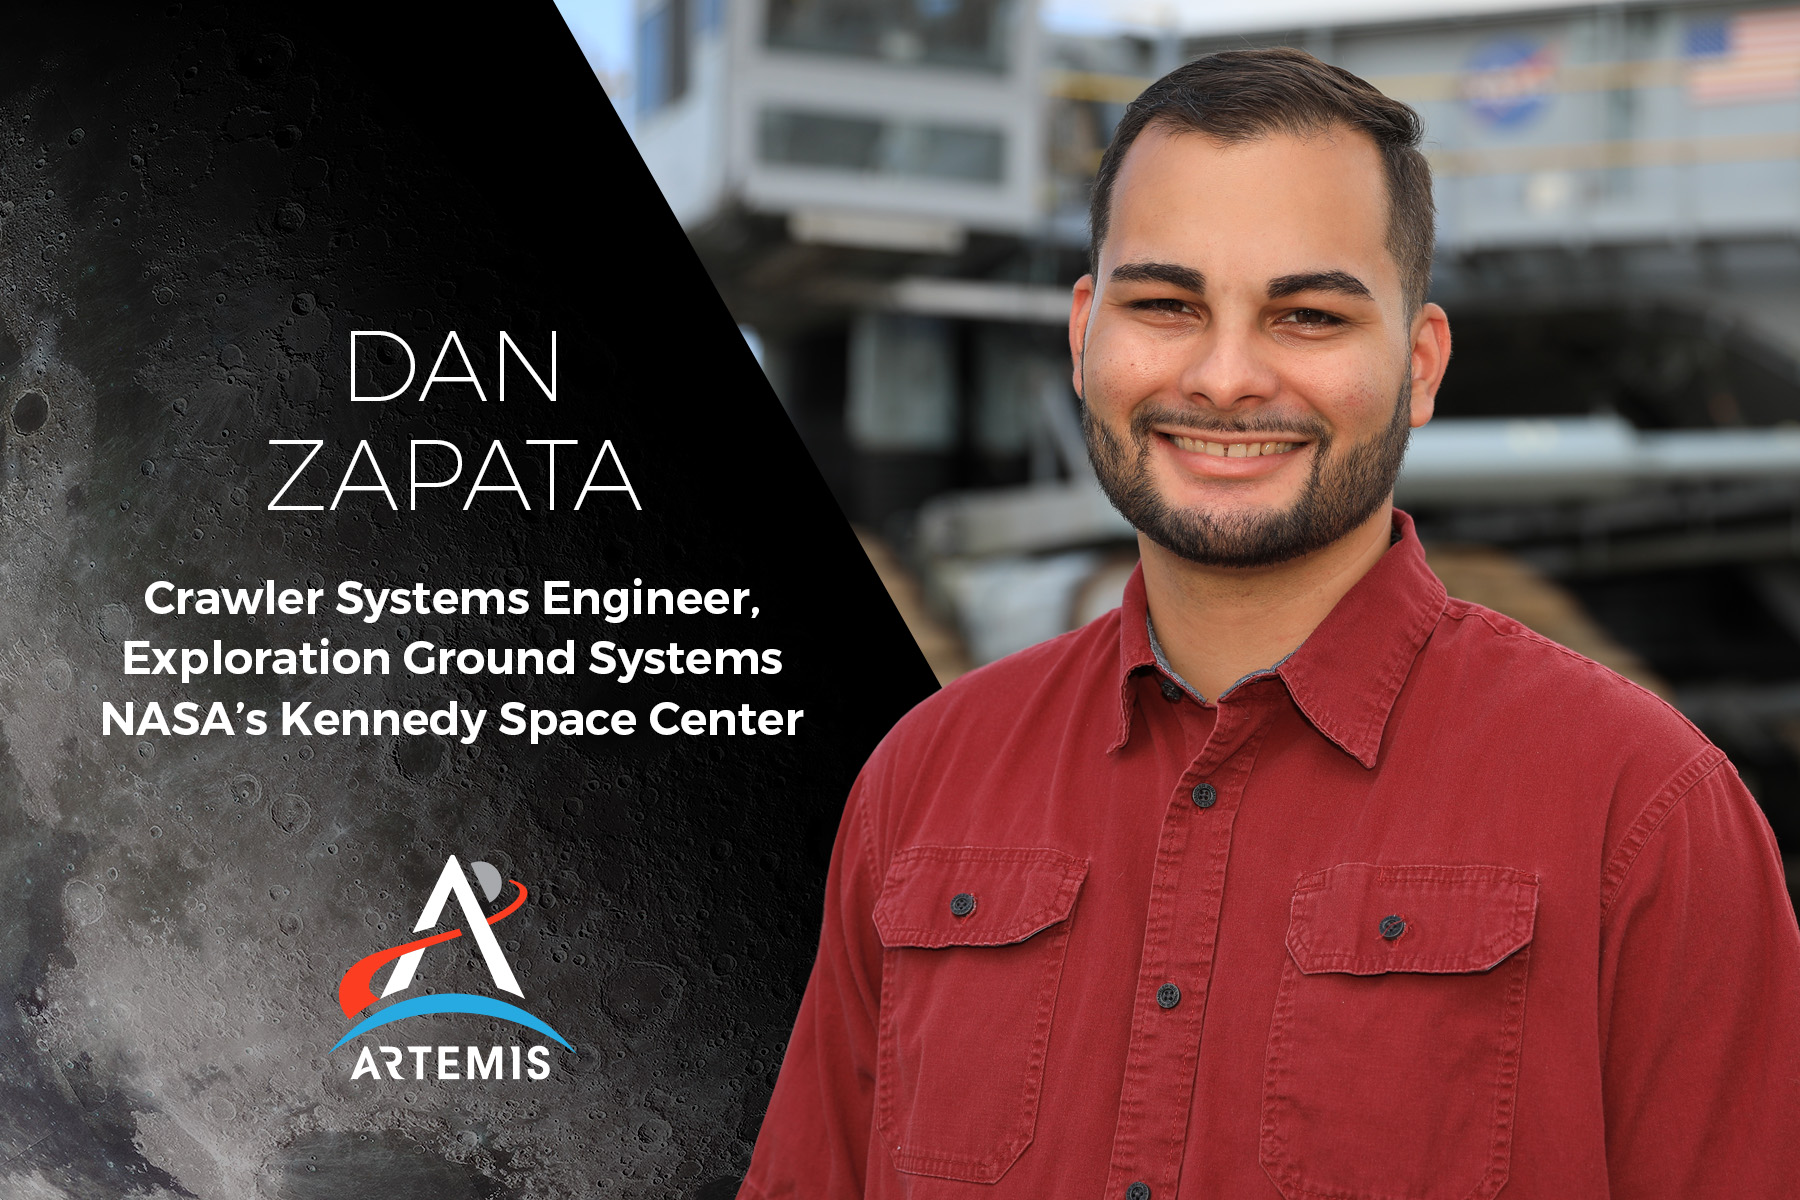 I am Artemis: Dan Zapata
